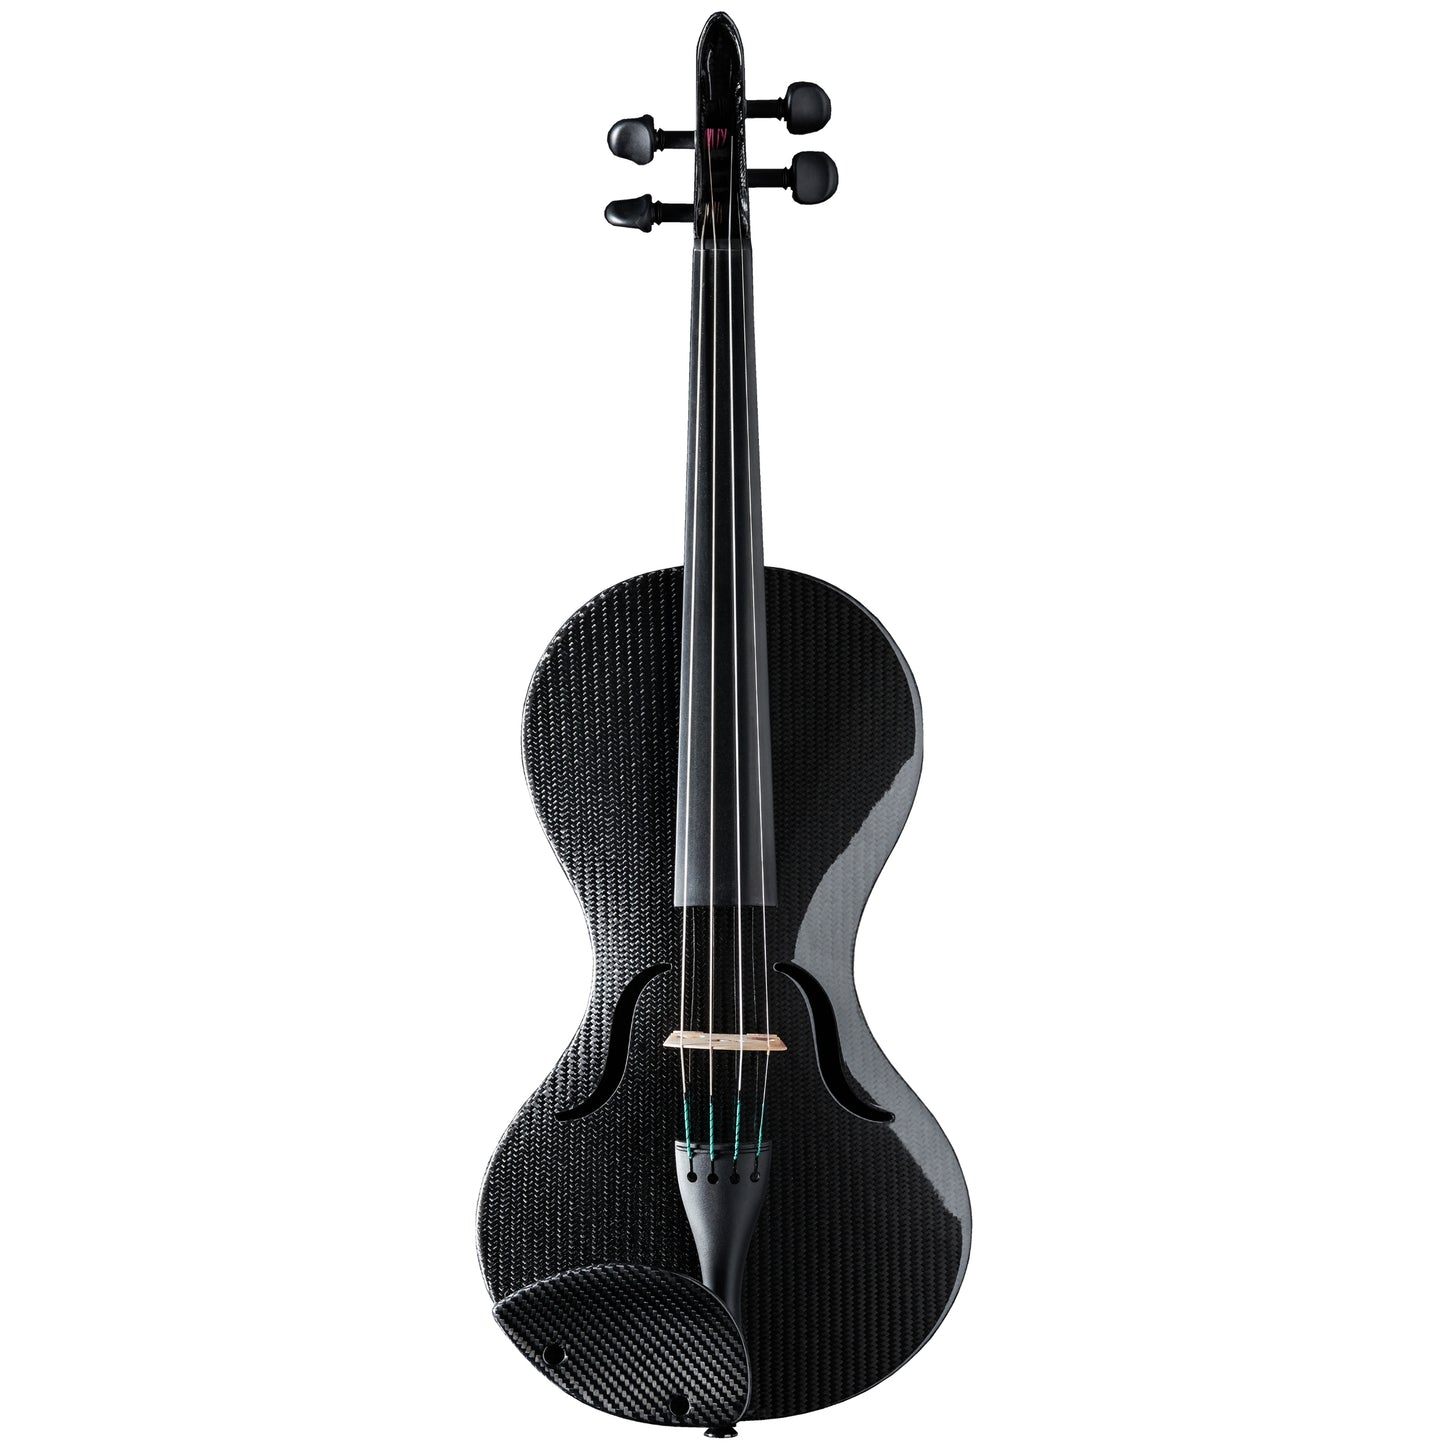 Carbon violin "Design Line" German Musical Instrument Award 2015